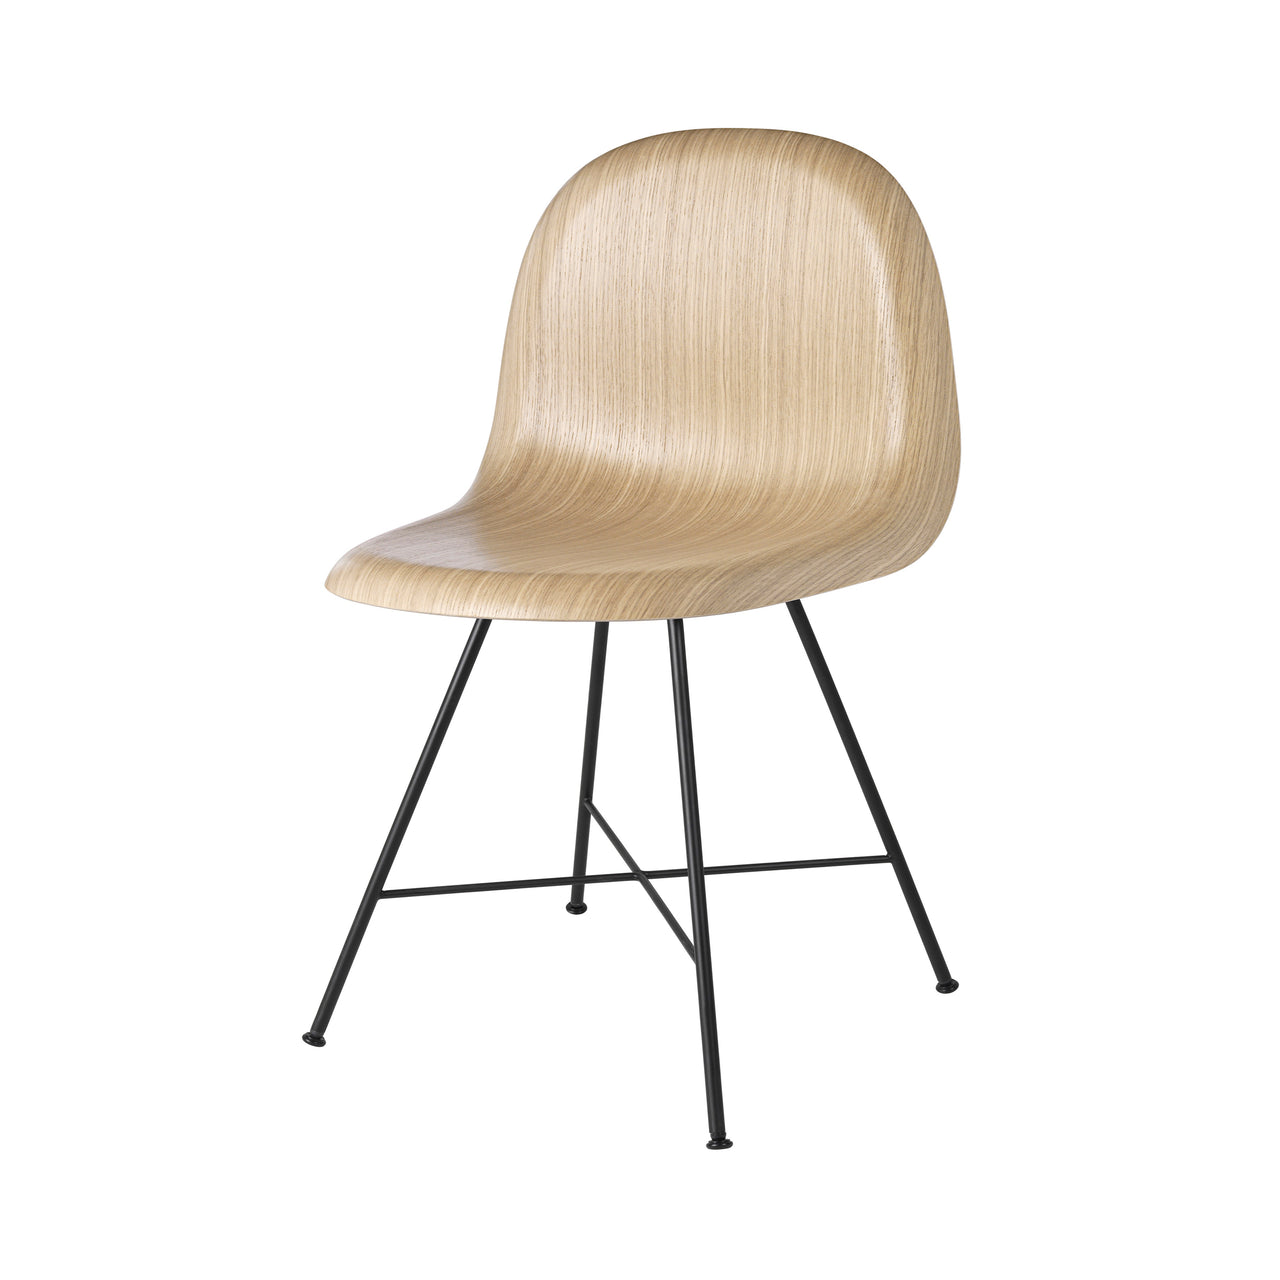 3D Dining Chair: Center Base + Oak